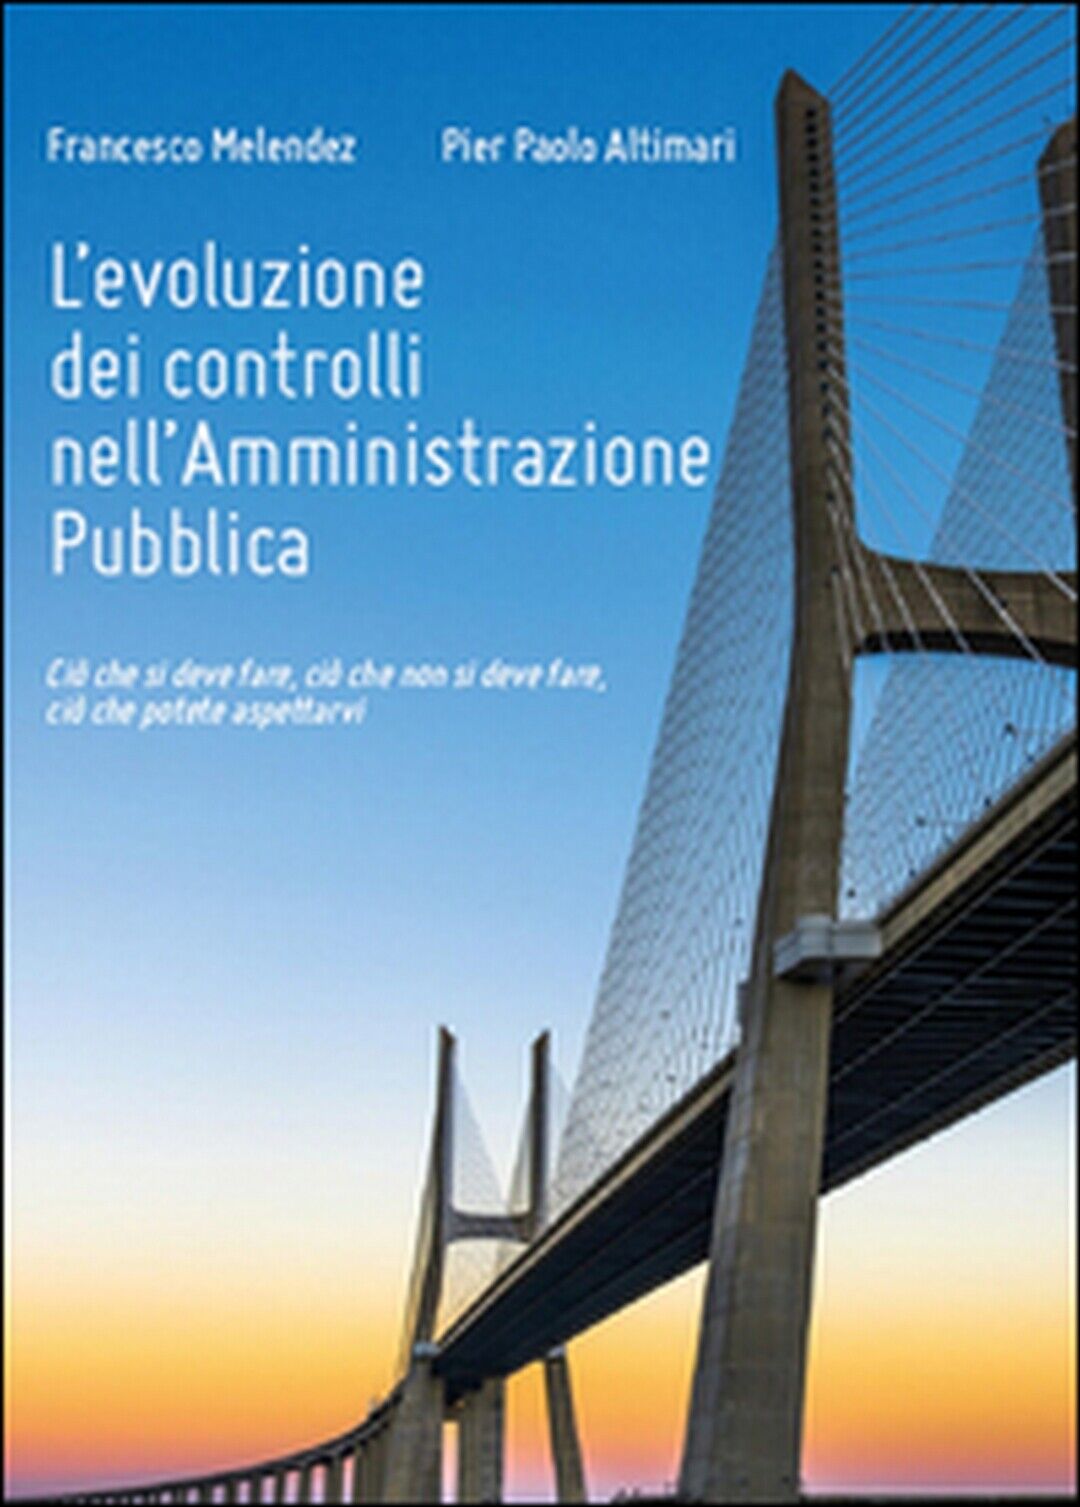 L'evoluzione dei controlli nelL'amministrazione pubblica,  di Francesco Melendez libro usato